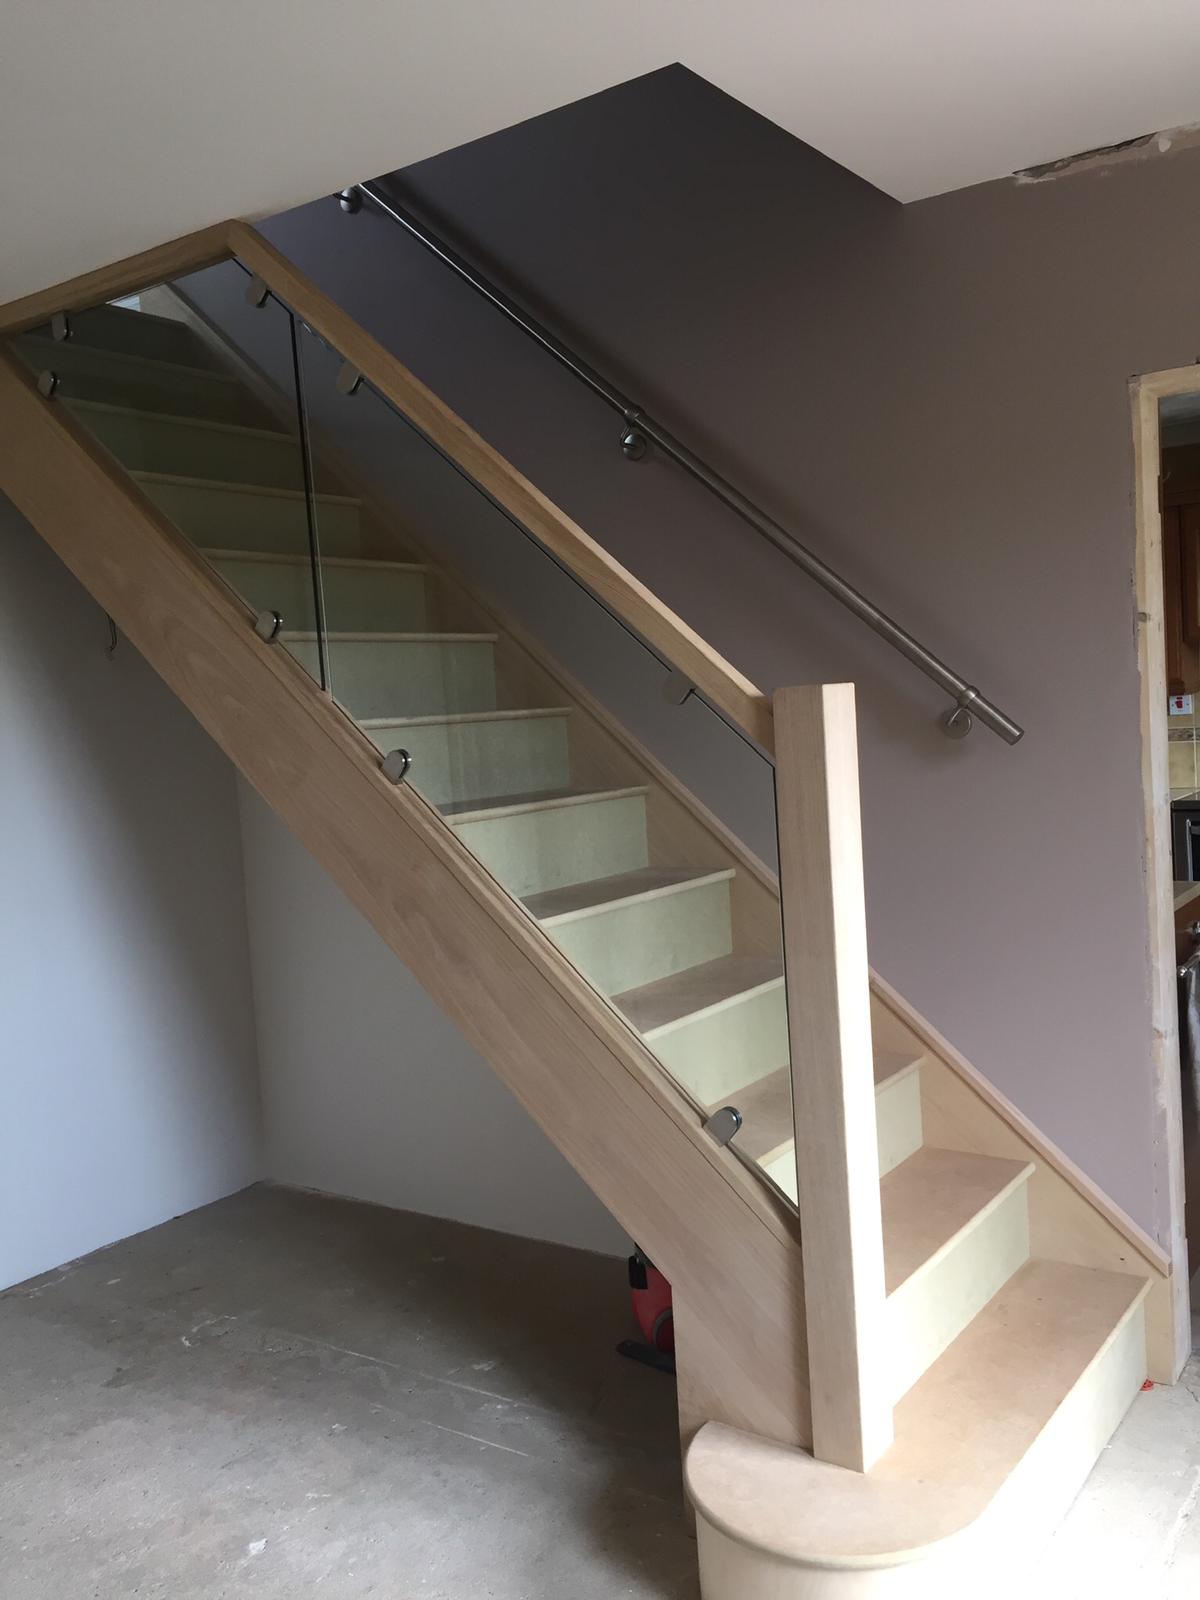 Bespoke Staircase Installation In Little Tey, Essex